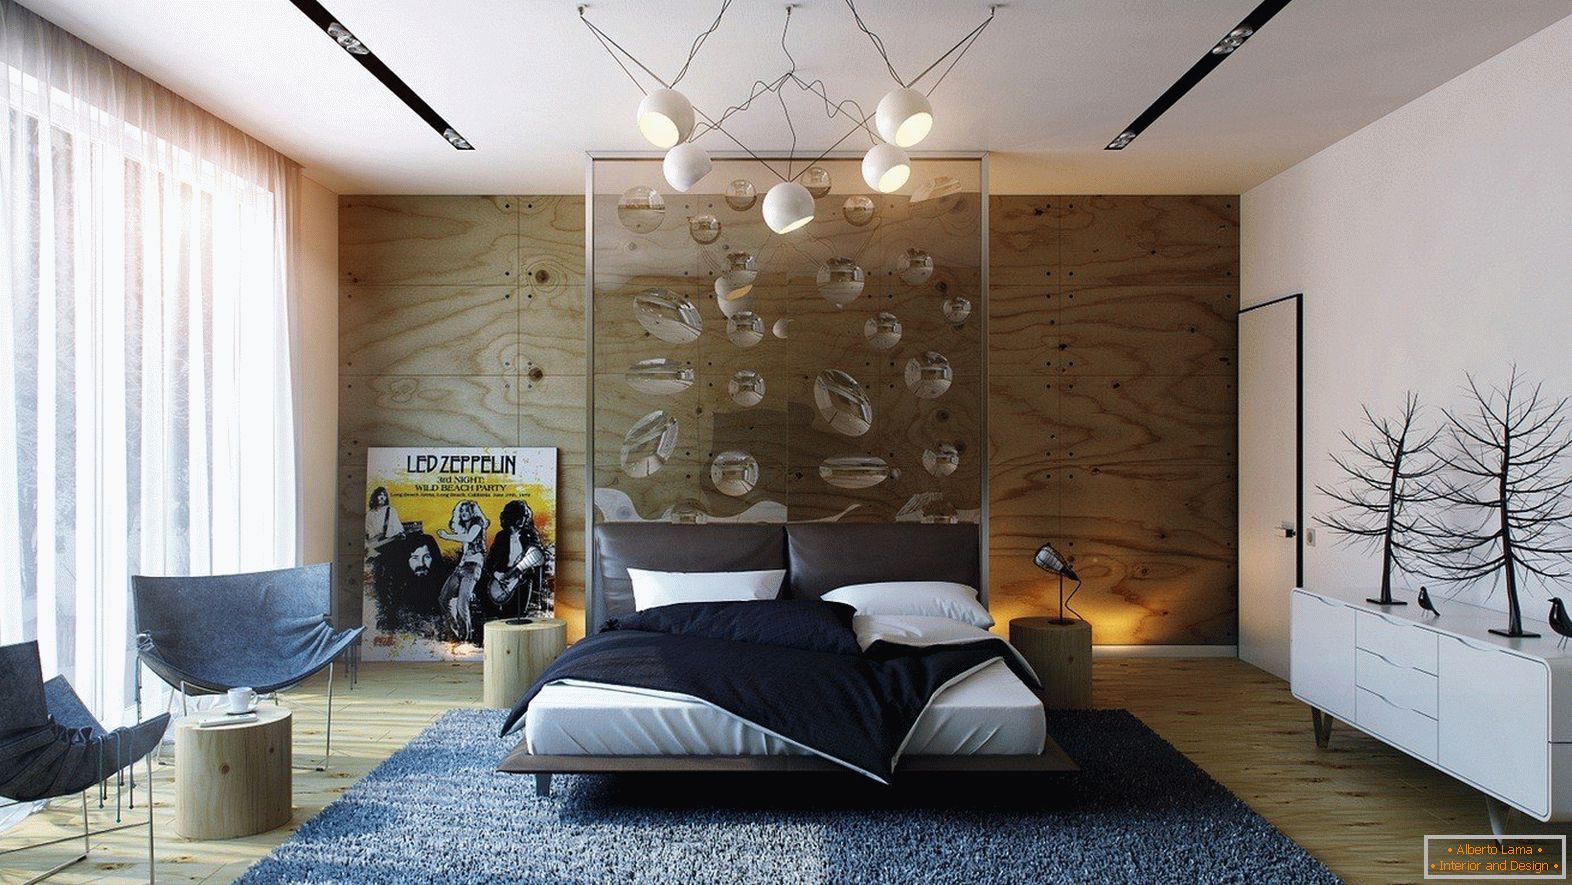 Moderni dizajn interijera spavaće sobe